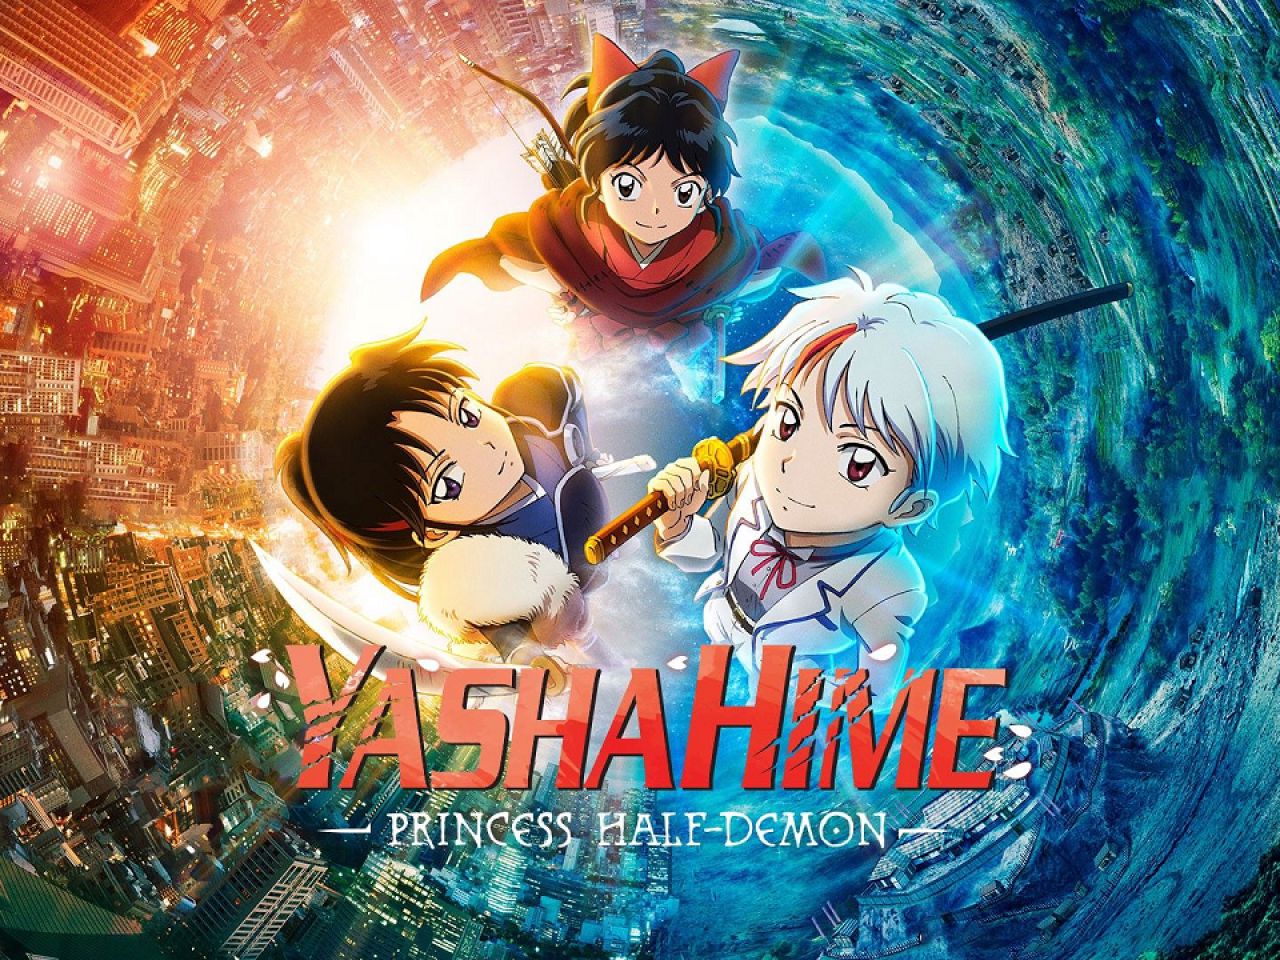 Yashahime: Princess Half-Demon Anime Review